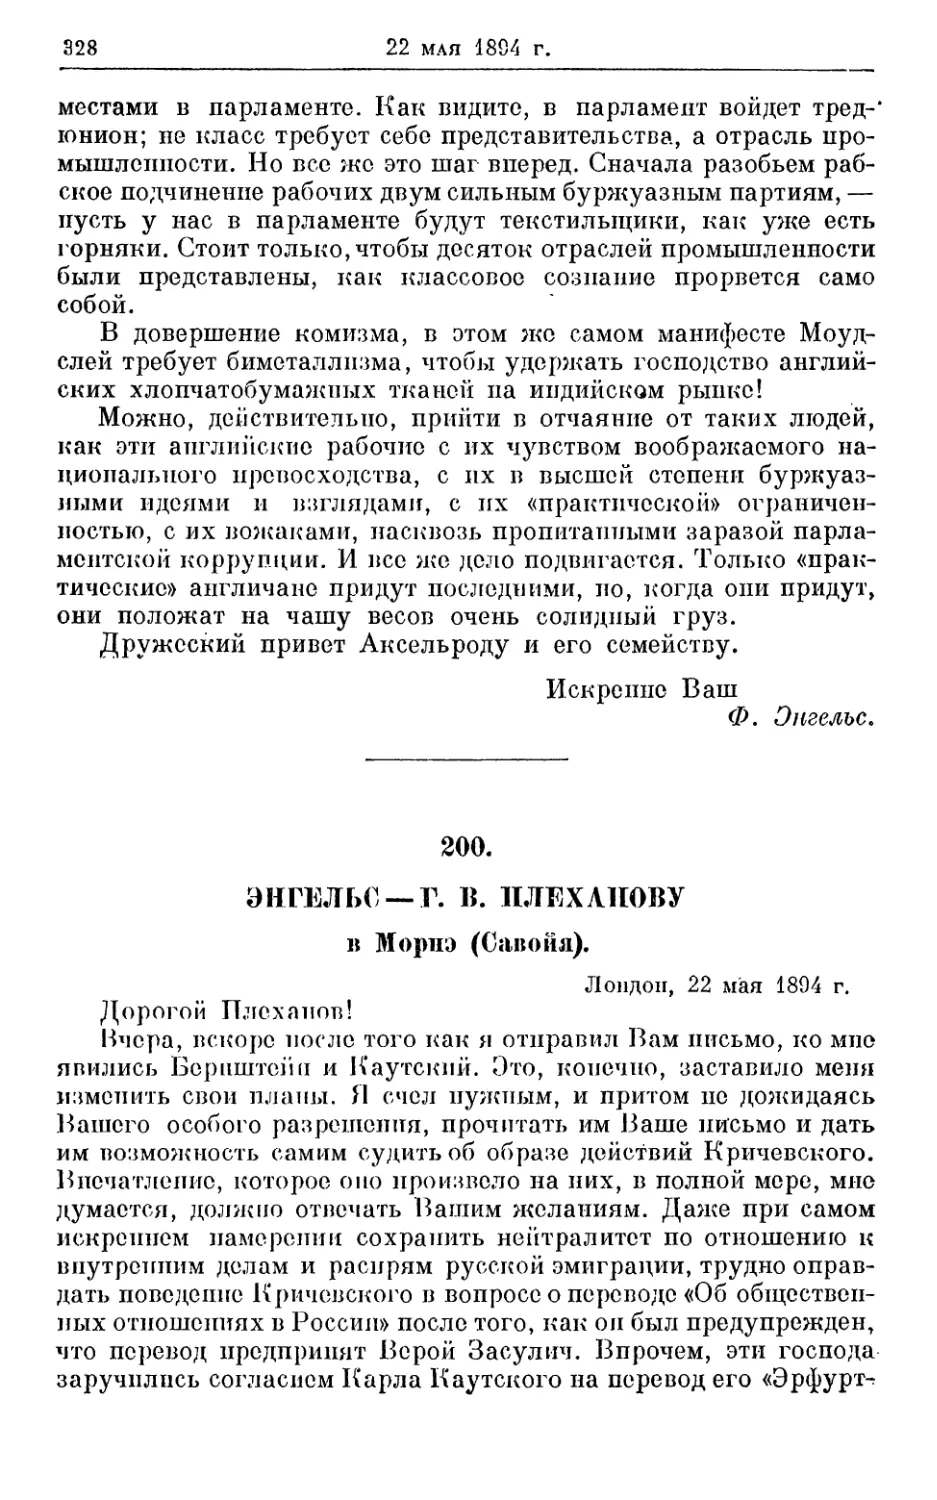 200. Энгельс — Г. В. Плеханову, 22 мая 1894г